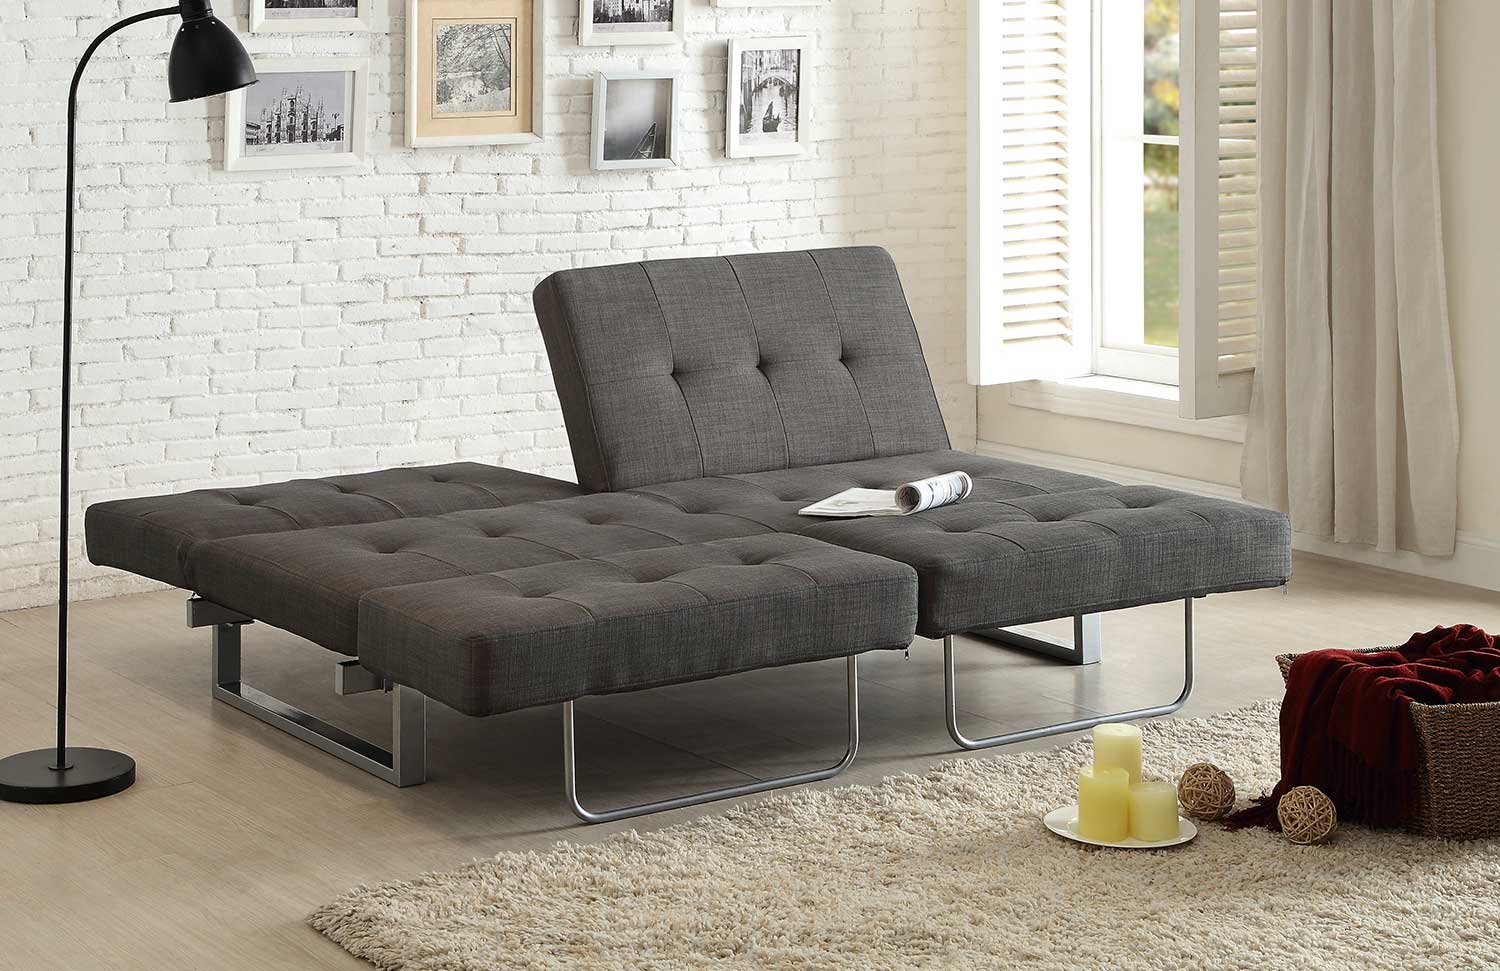 Homelegance Crispin Elegant Lounger Sofa Bed - Grey